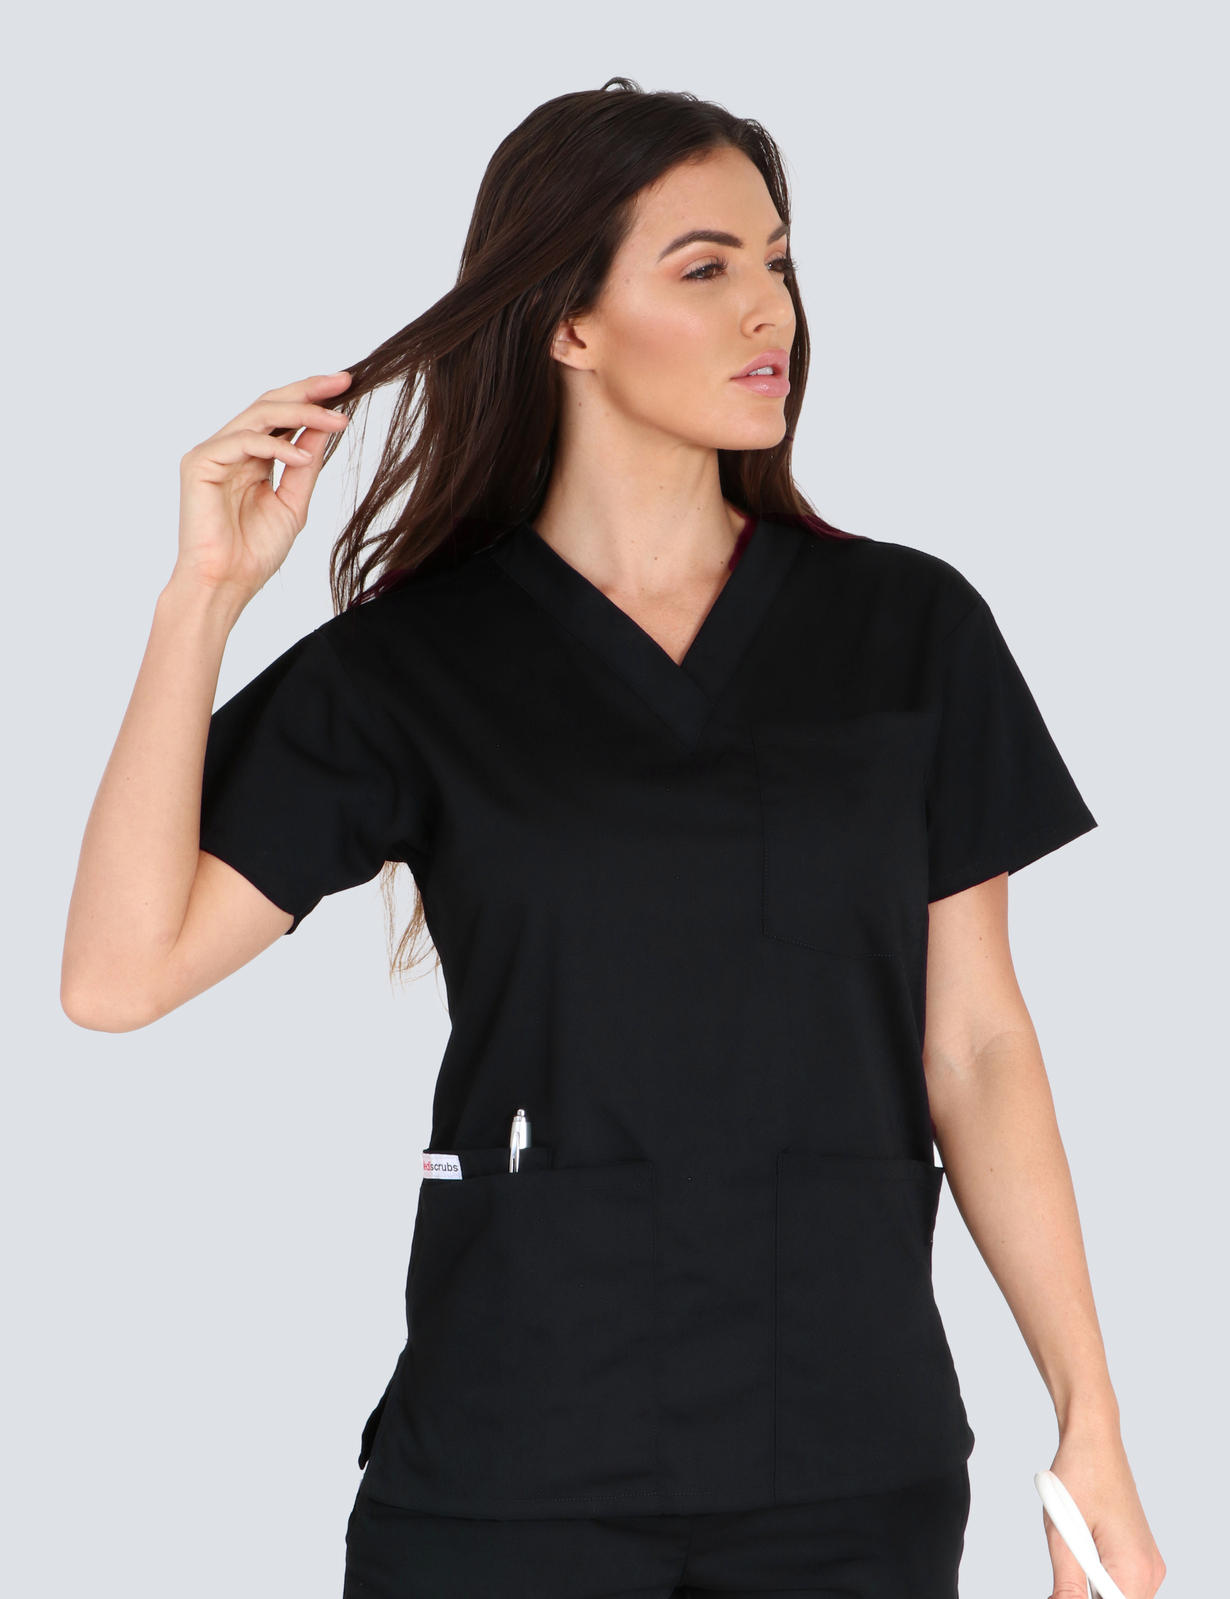 St Vincent's Hospital Sonographer  Uniform Top Only Bundle (4 Pocket Top in Black + Logo)